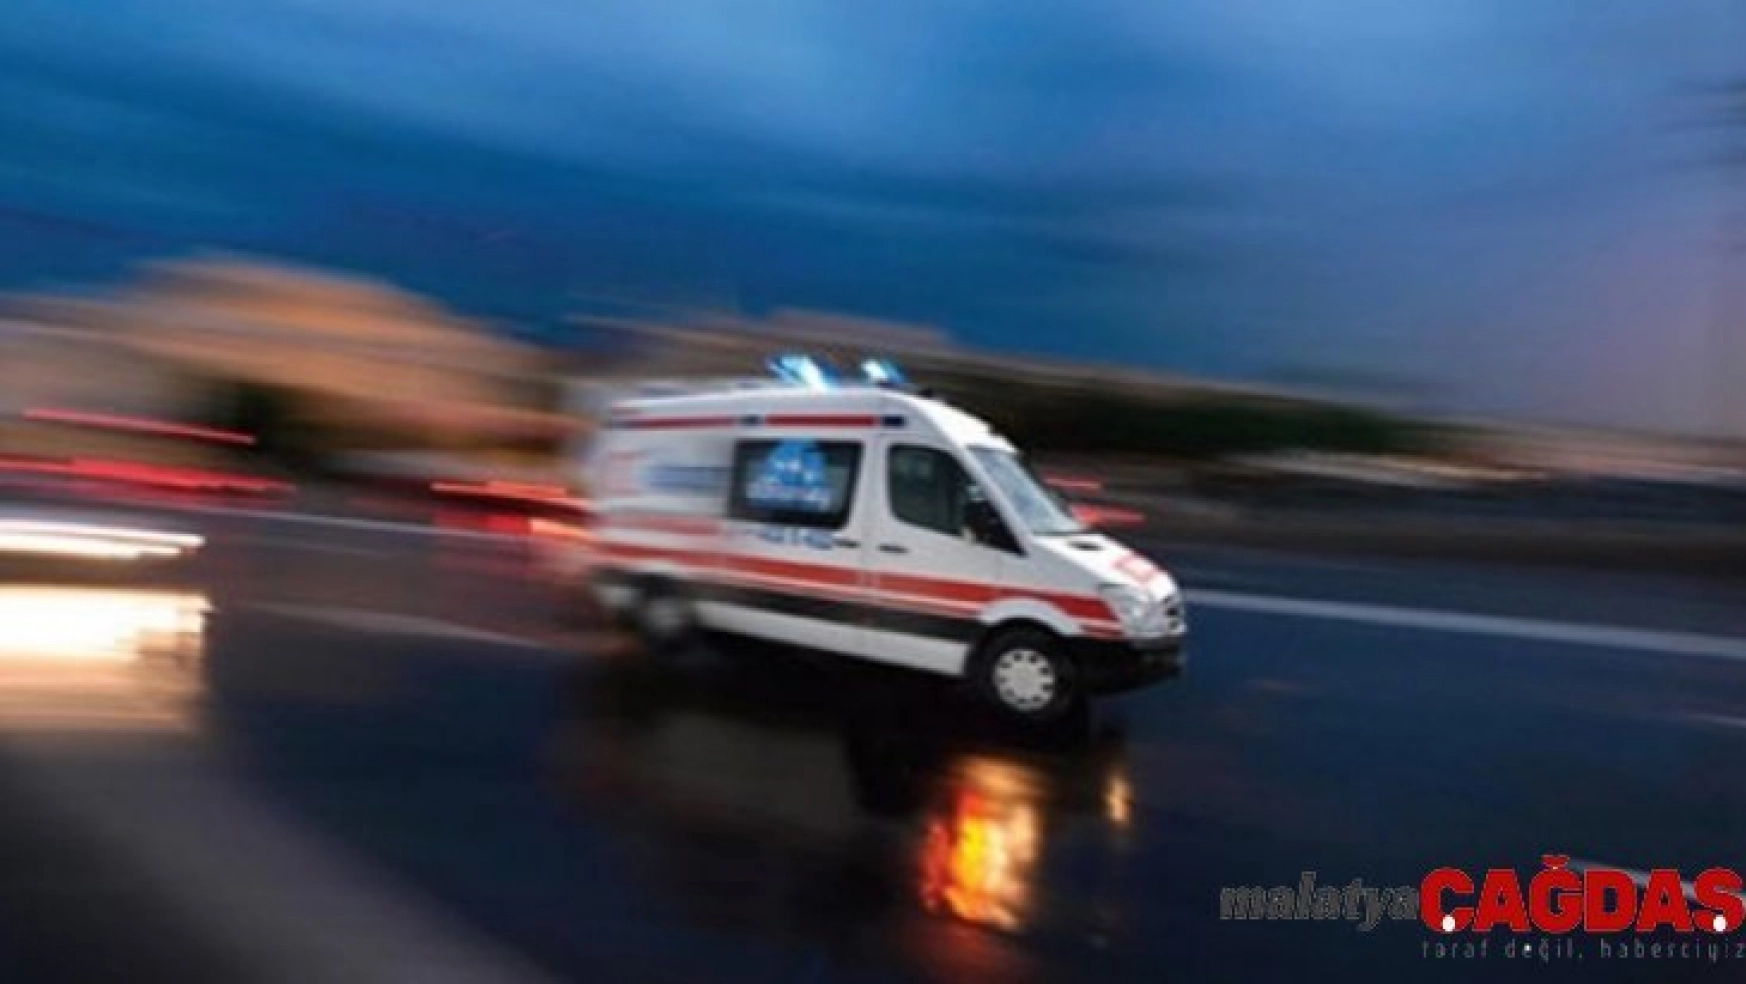 Yüksekova'da zincirleme kaza: 7 yaralı